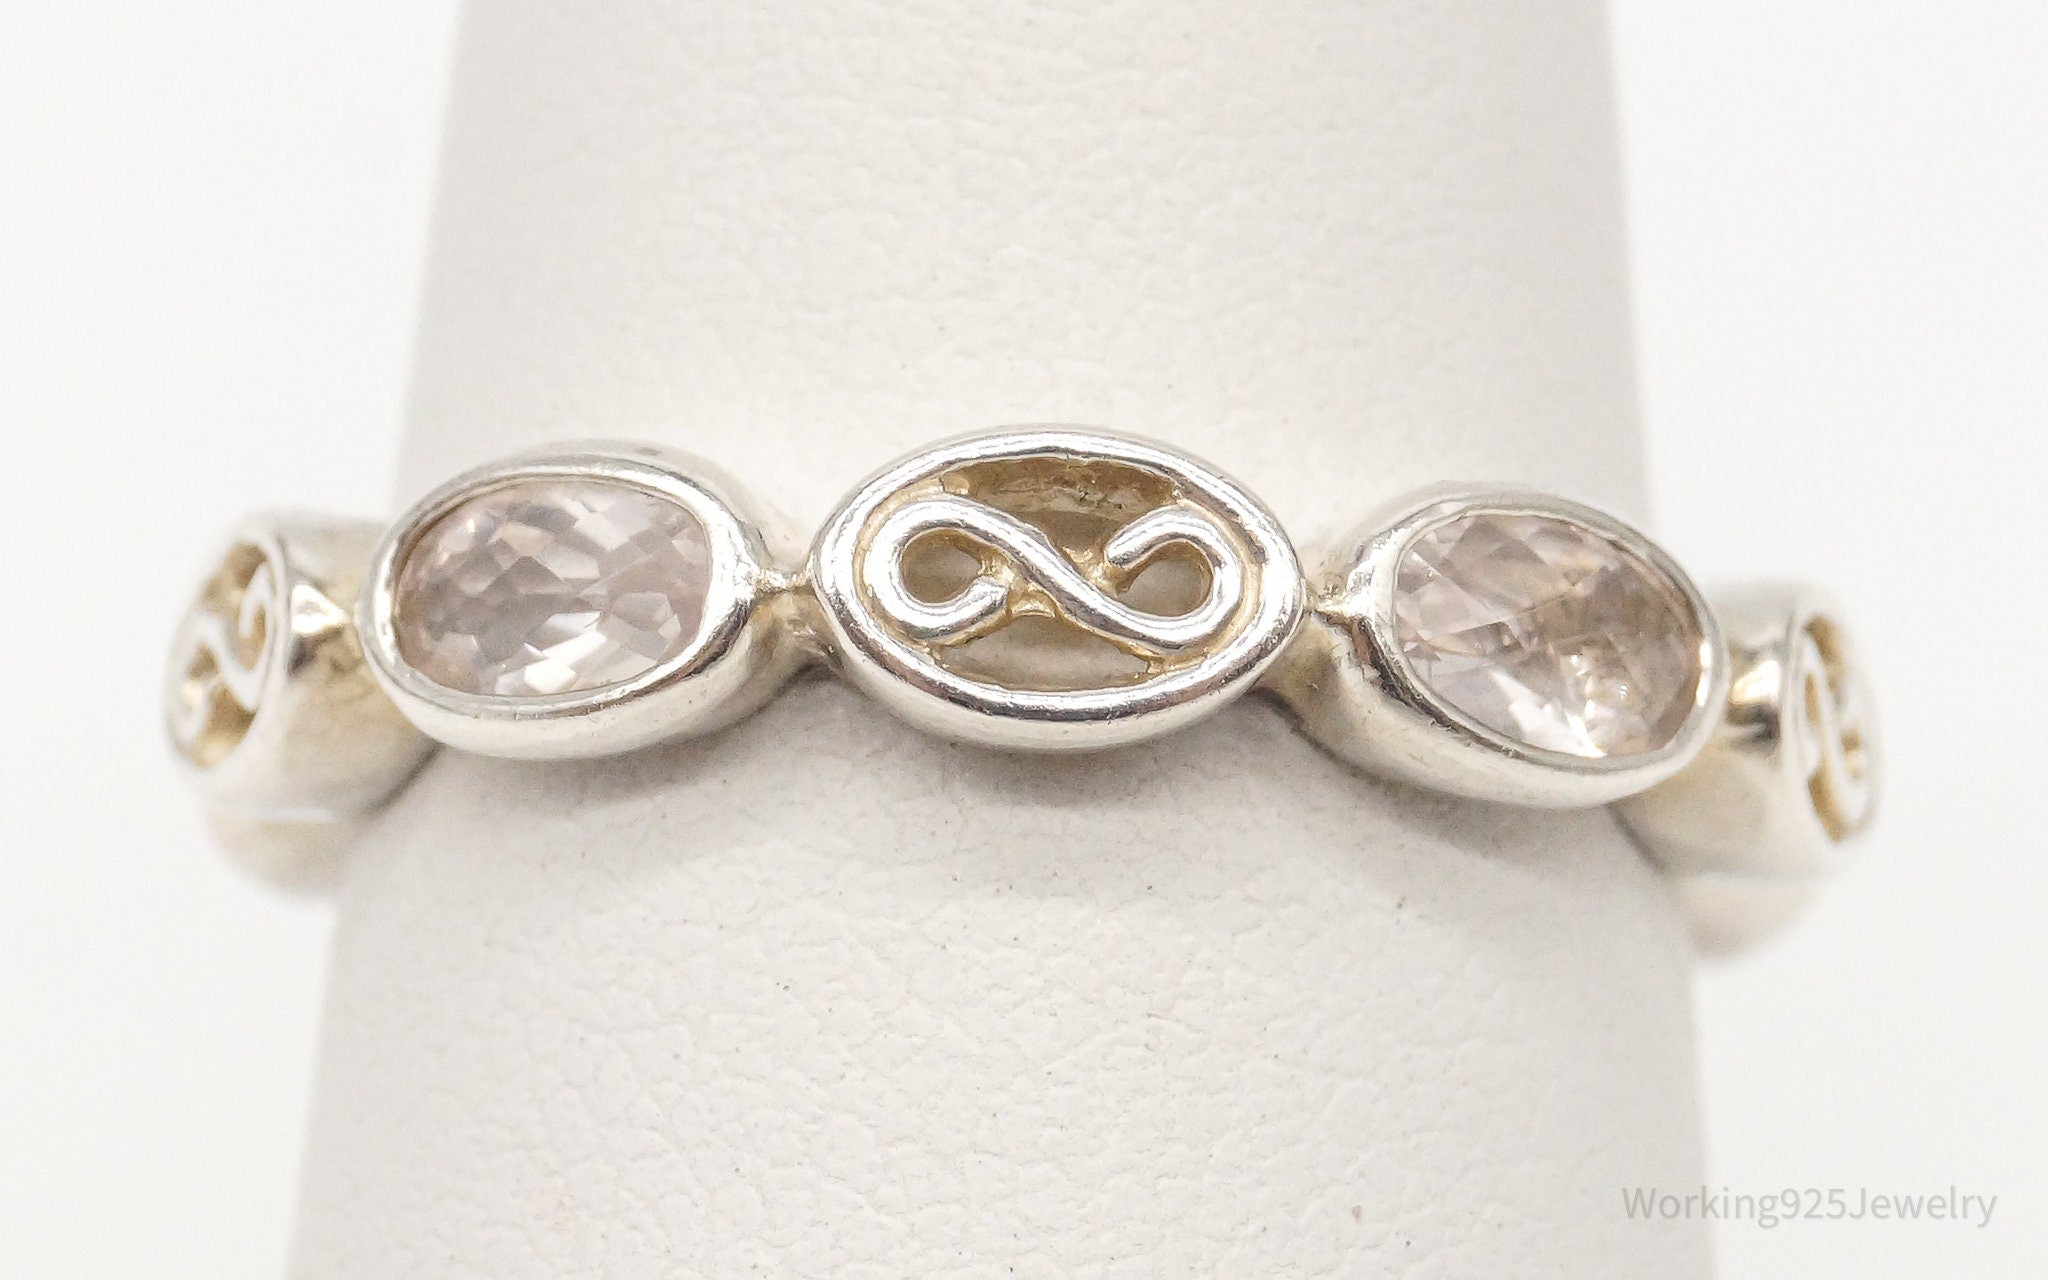 Vintage Rose Quartz Sterling Silver Ring - Size 7